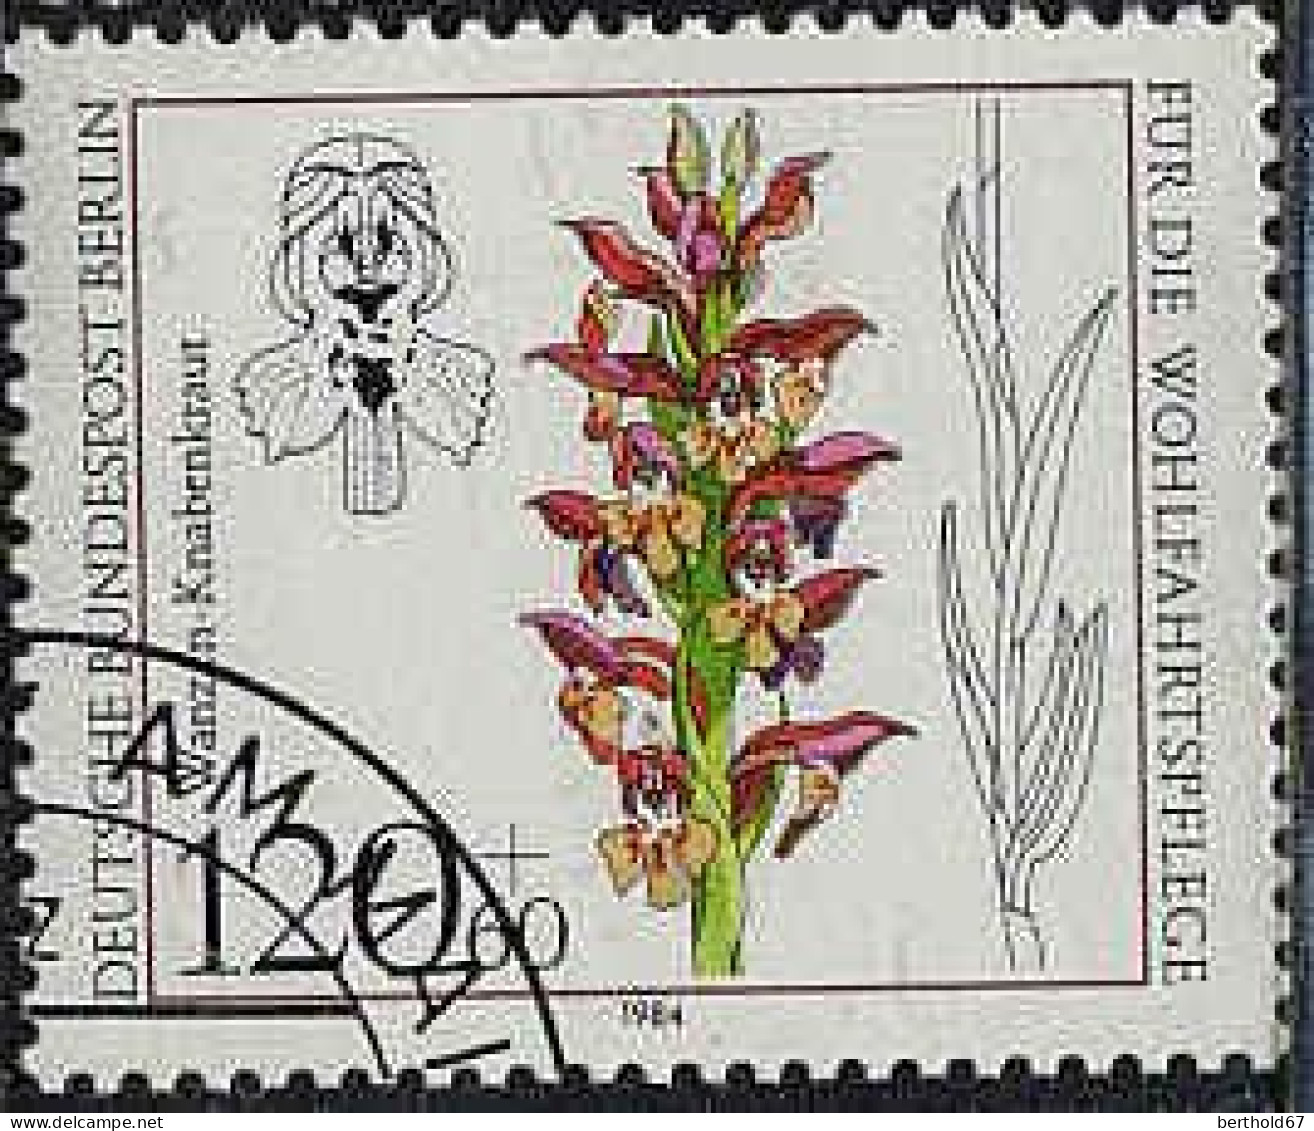 Berlin Poste Obl Yv:685/688 Bienfaisance Orchidées (Beau Cachet Rond) - Gebraucht